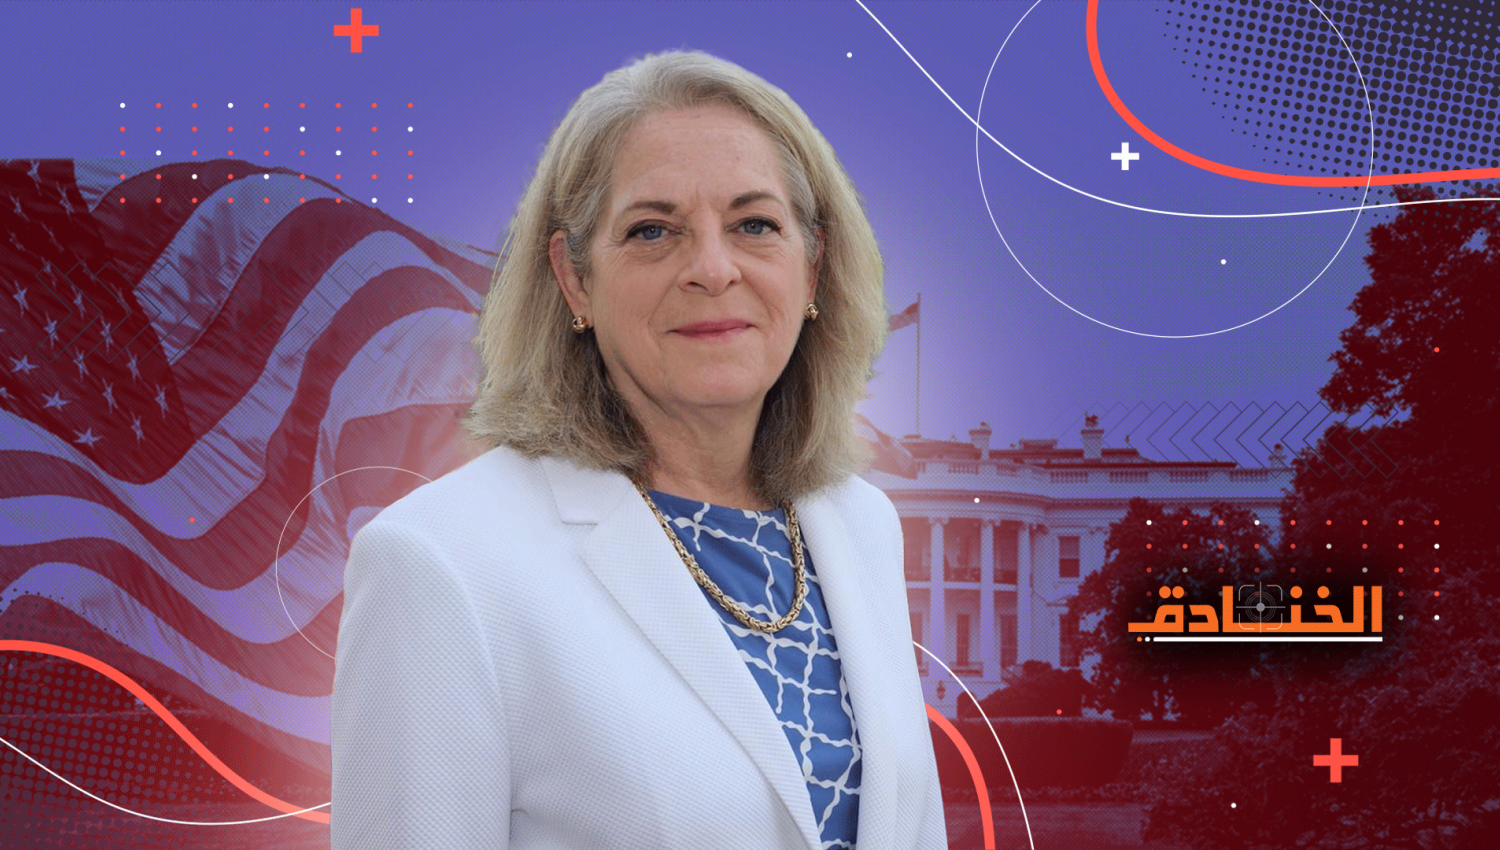 شاهد | ألينا رومانوفسكي: السفيرة الأمريكية الجديدة في العراق